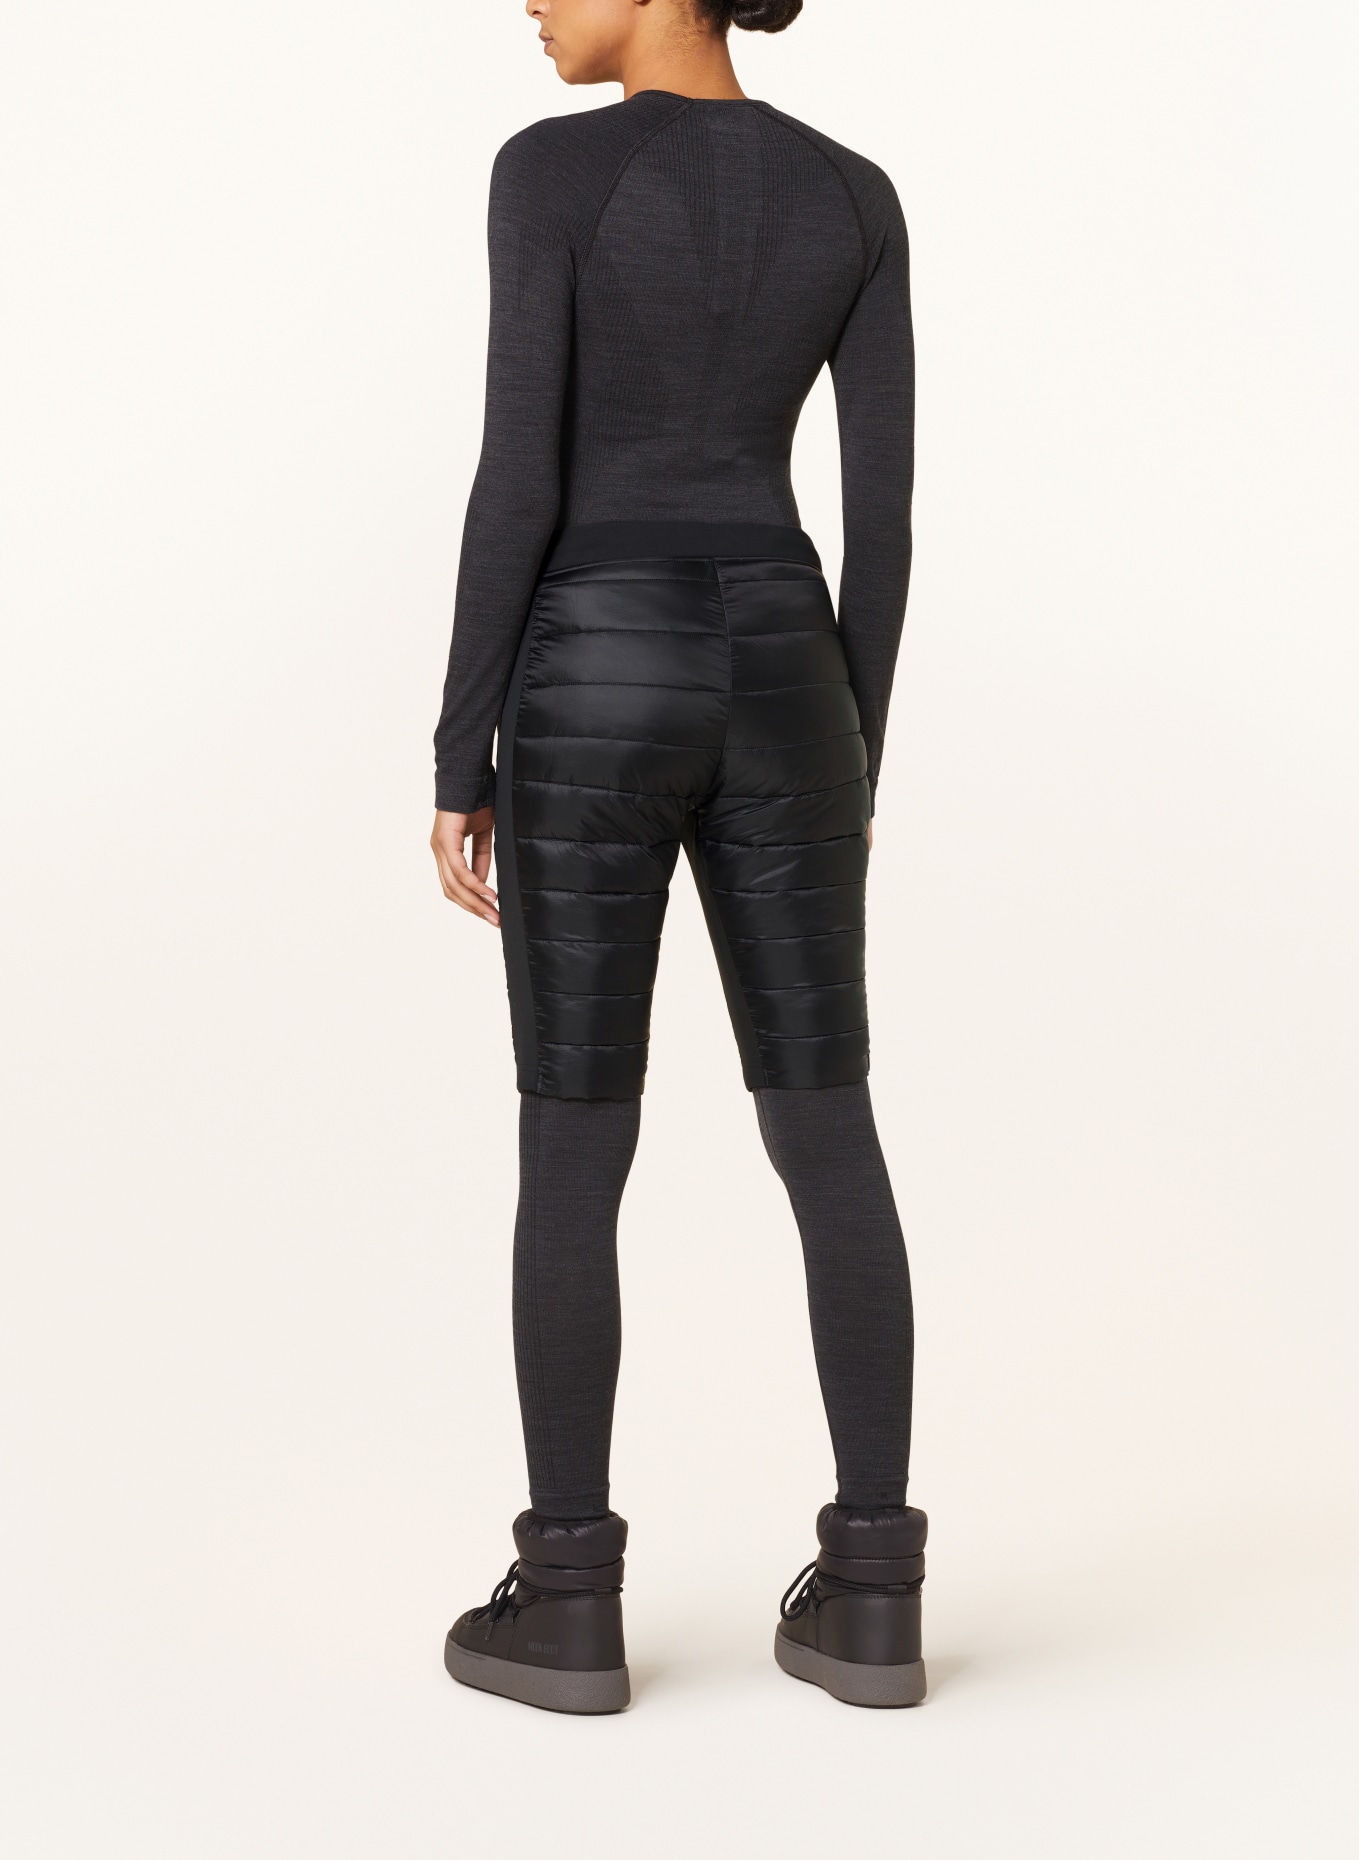 SCOTT Shorts INSULOFT TECH, Color: BLACK (Image 3)